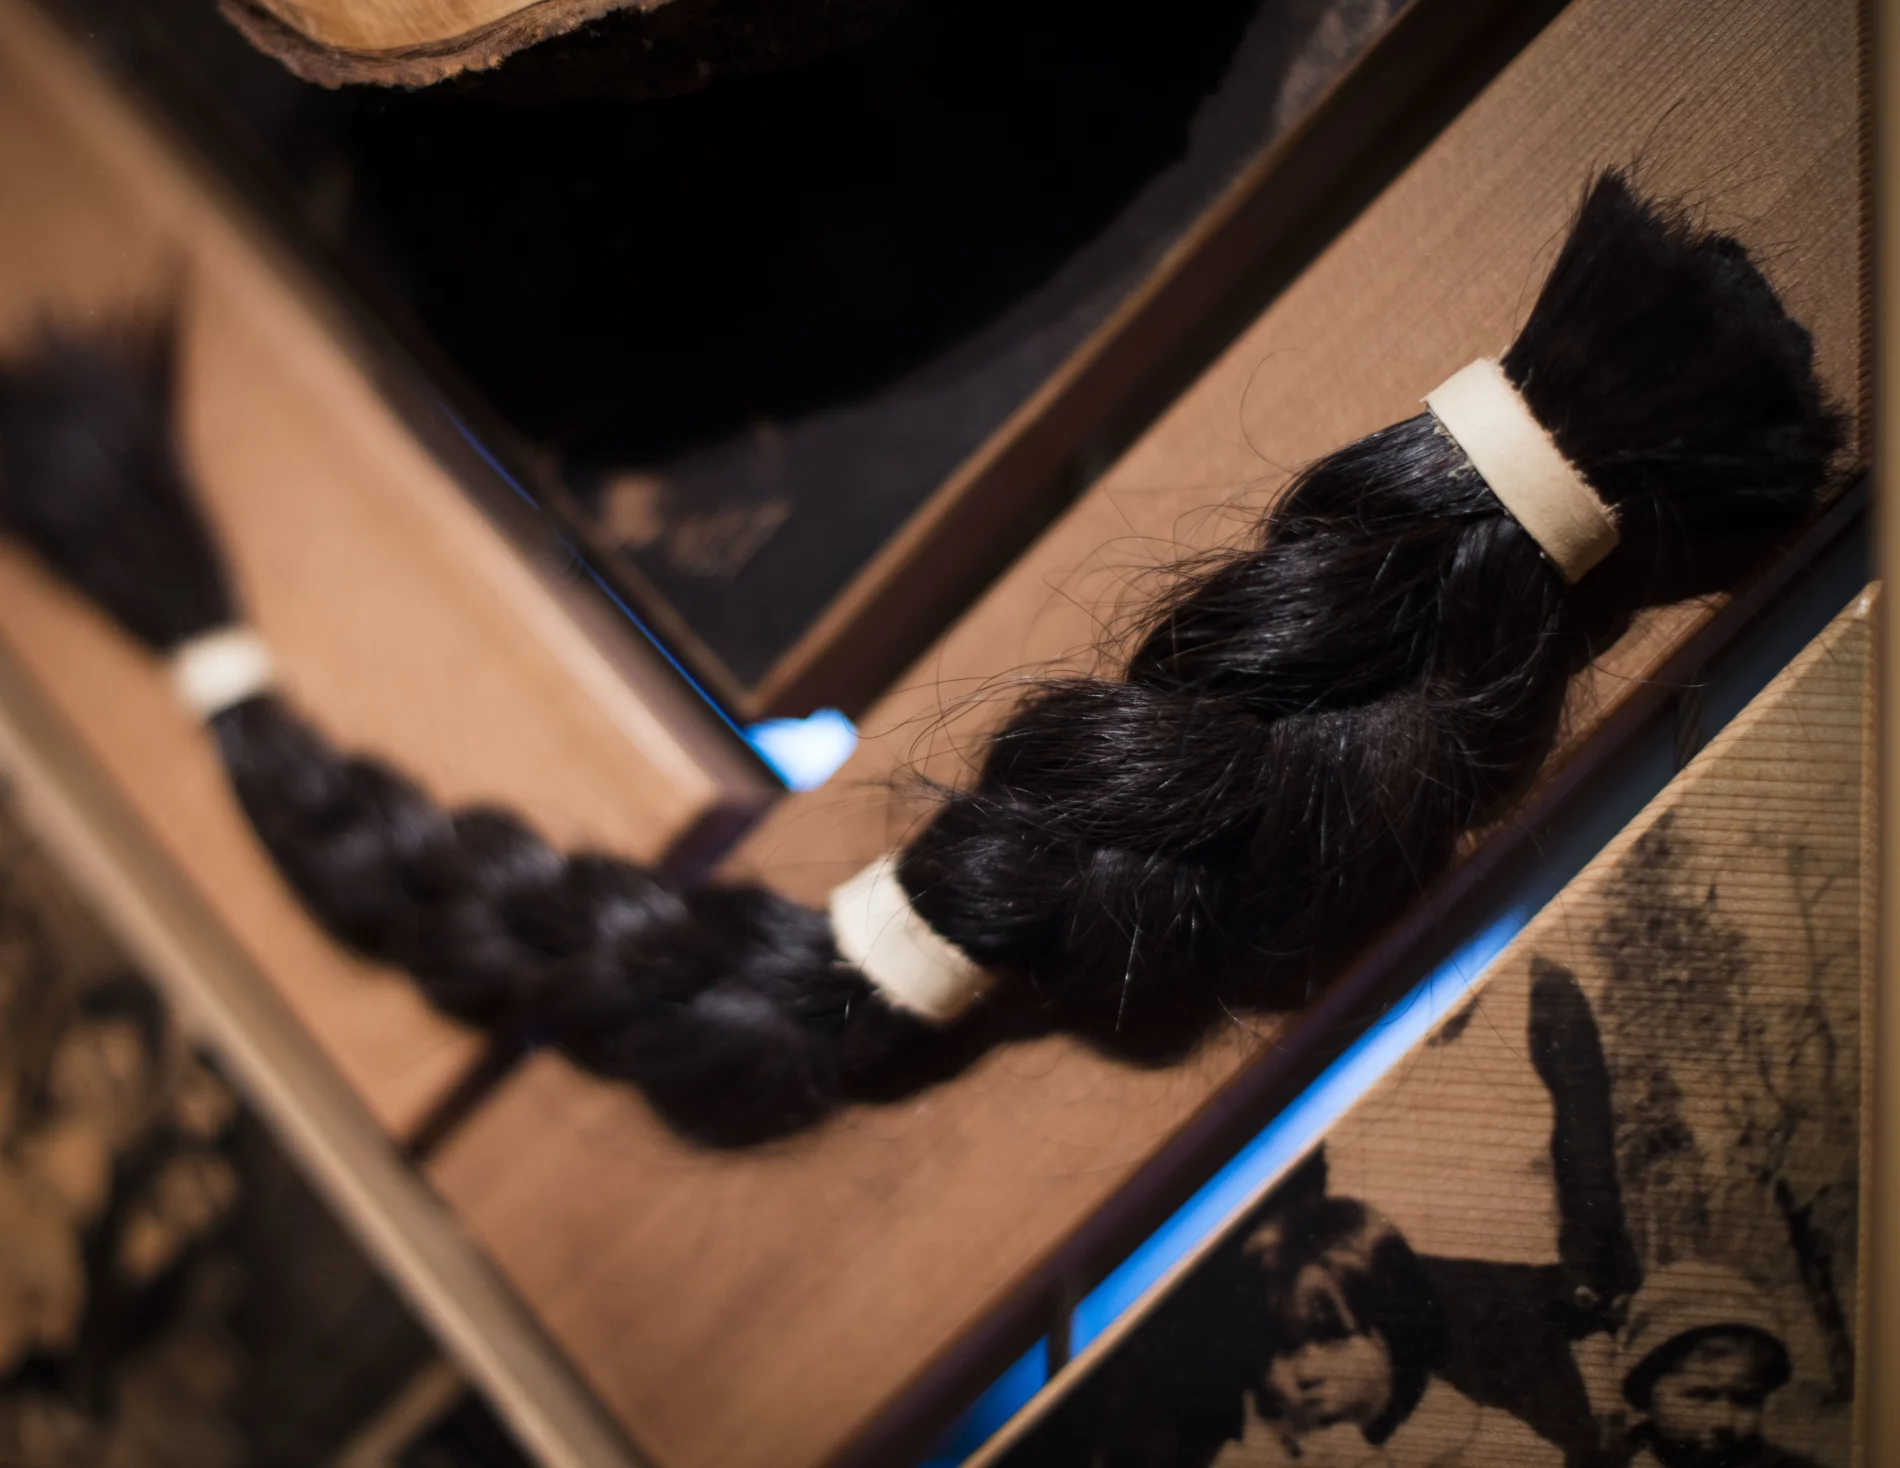 A braid of hair